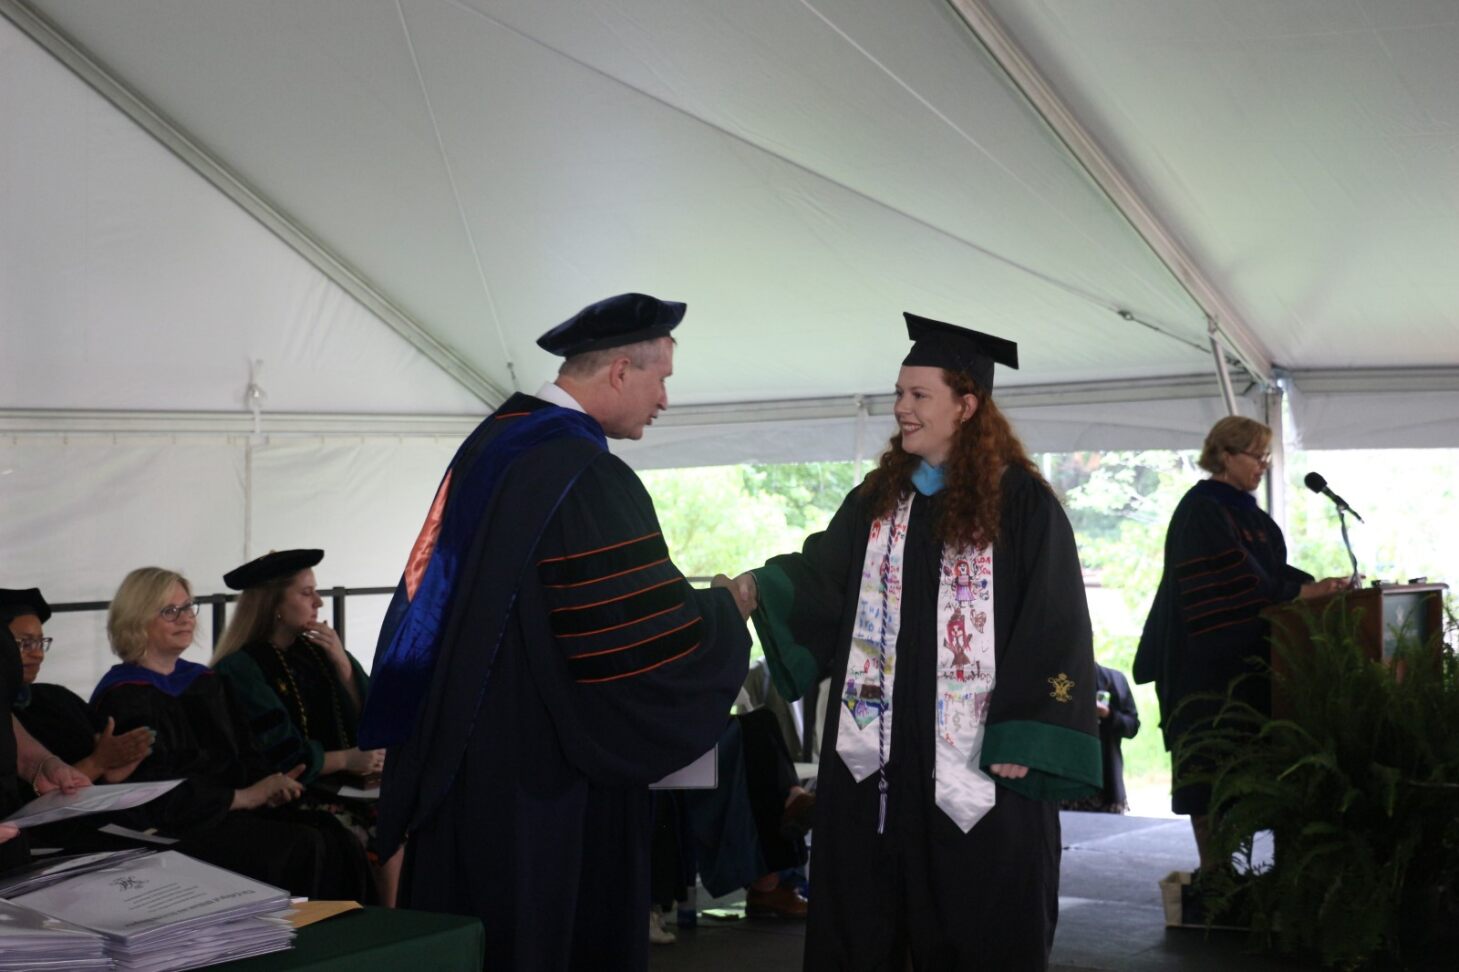 Graduate Receiving Diploma